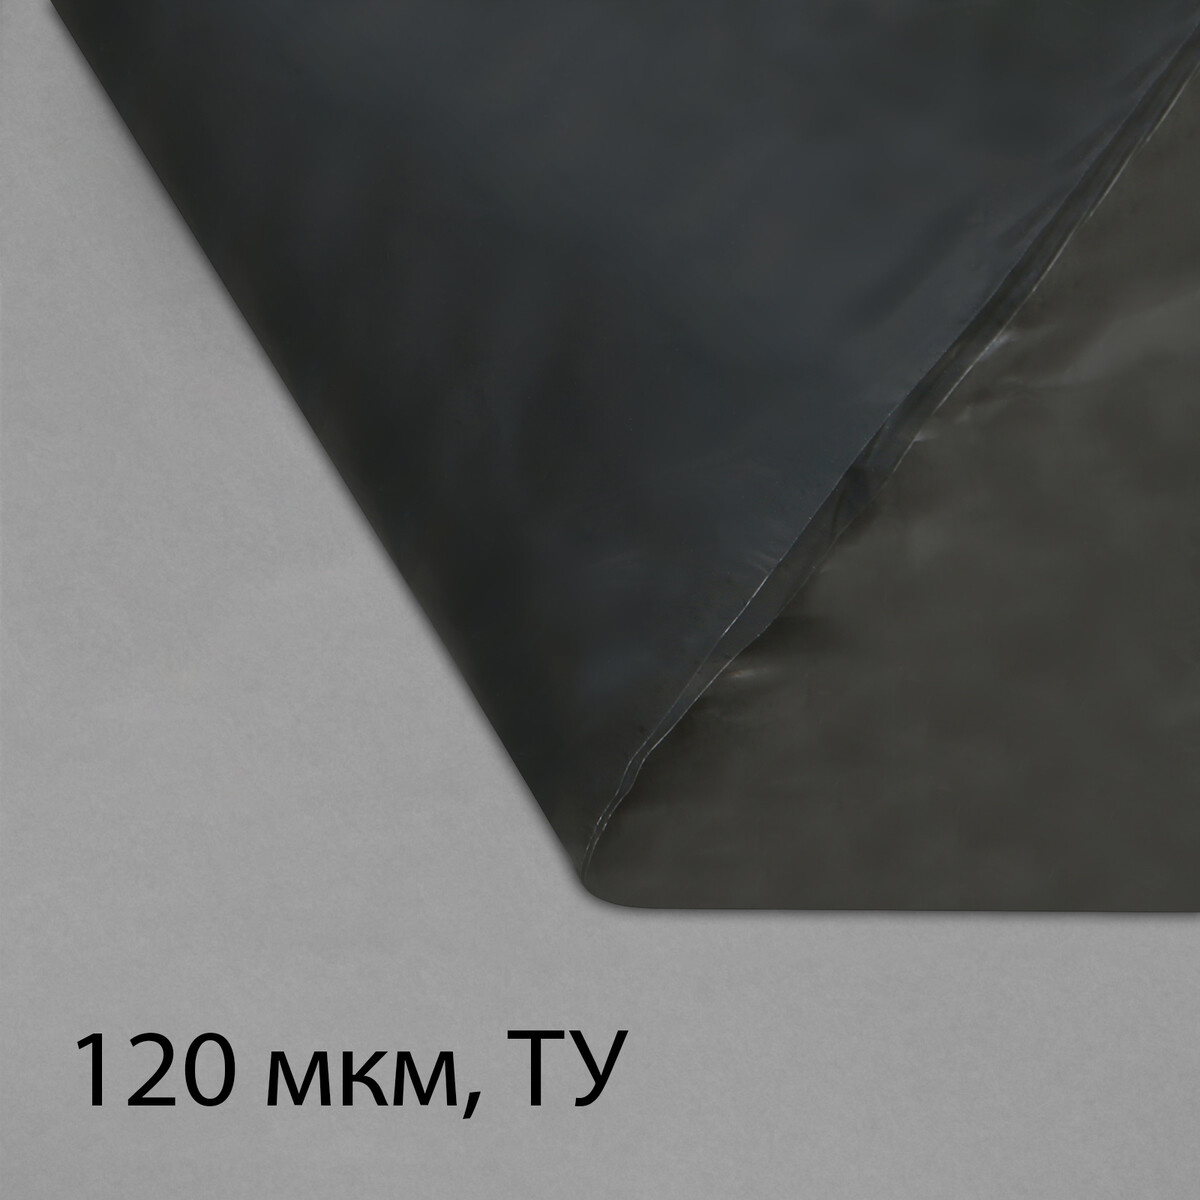 Пленка полиэтиленовая, техническая, толщина 120 мкм, 5 × 3 м, рукав (1,5 м × 2), черная, 2 сорт, эконом 50 % пленка полиэтиленовая техническая толщина 120 мкм 5 × 3 м рукав 1 5 м × 2 черная 2 сорт эконом 50 %